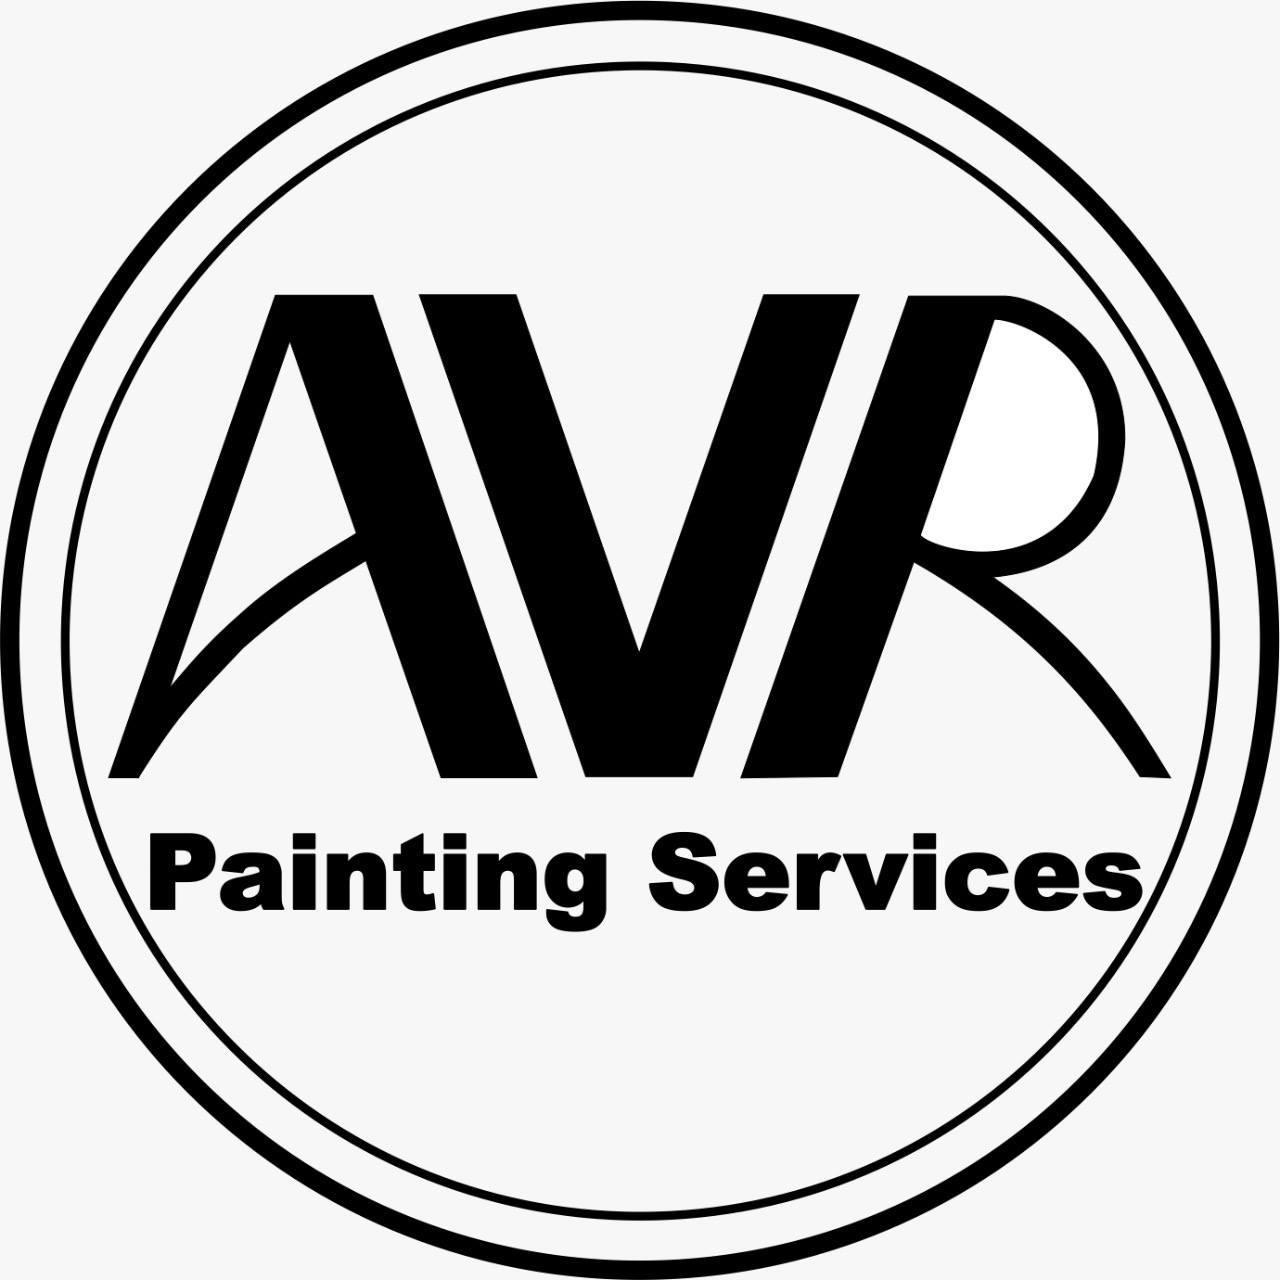 AVR letter logo design on black background. AVR creative initials letter  logo concept. AVR letter design. 15515704 Vector Art at Vecteezy